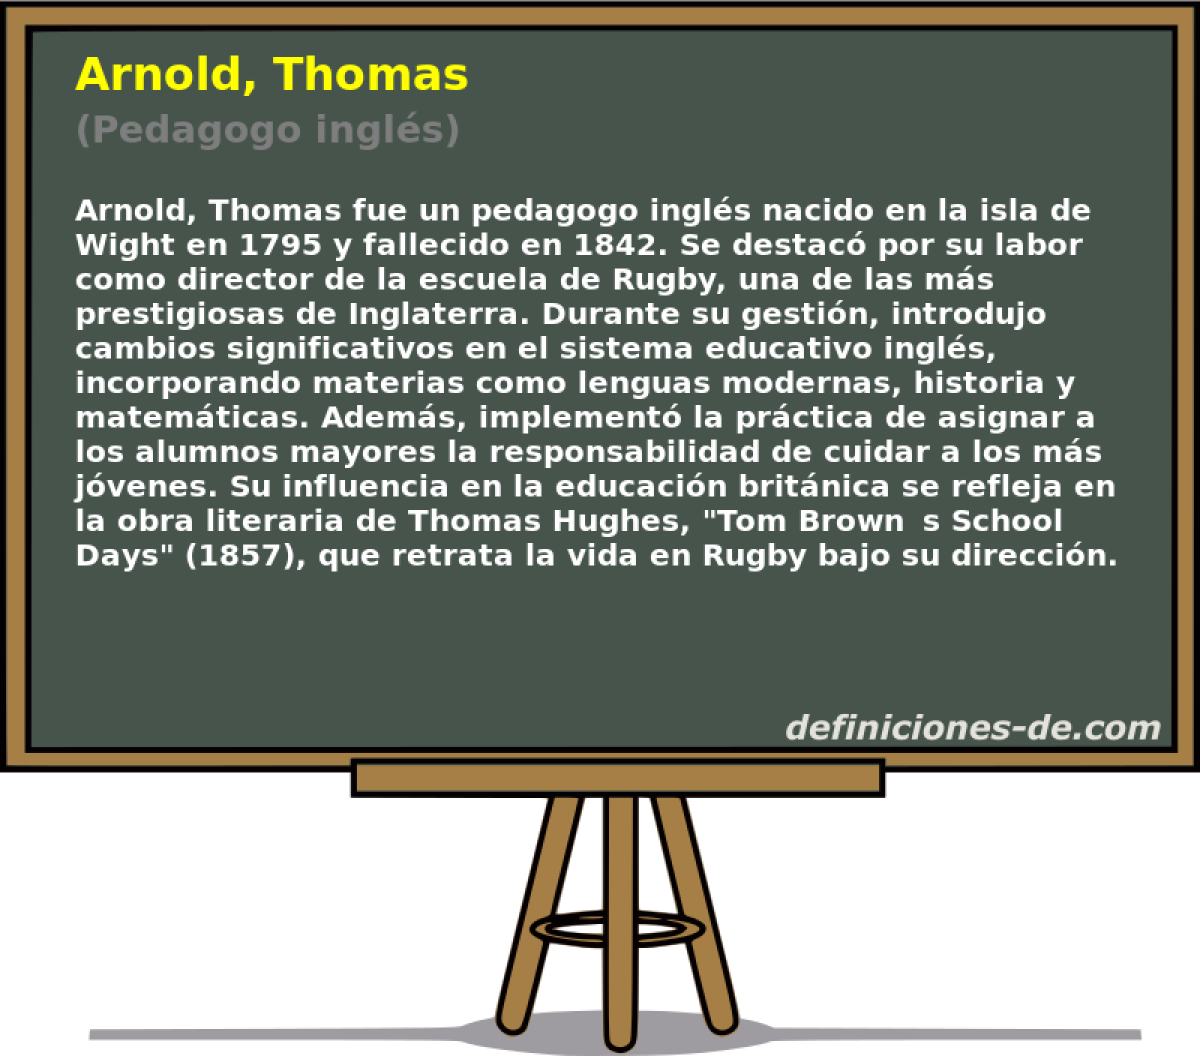 Arnold, Thomas (Pedagogo ingl�s)